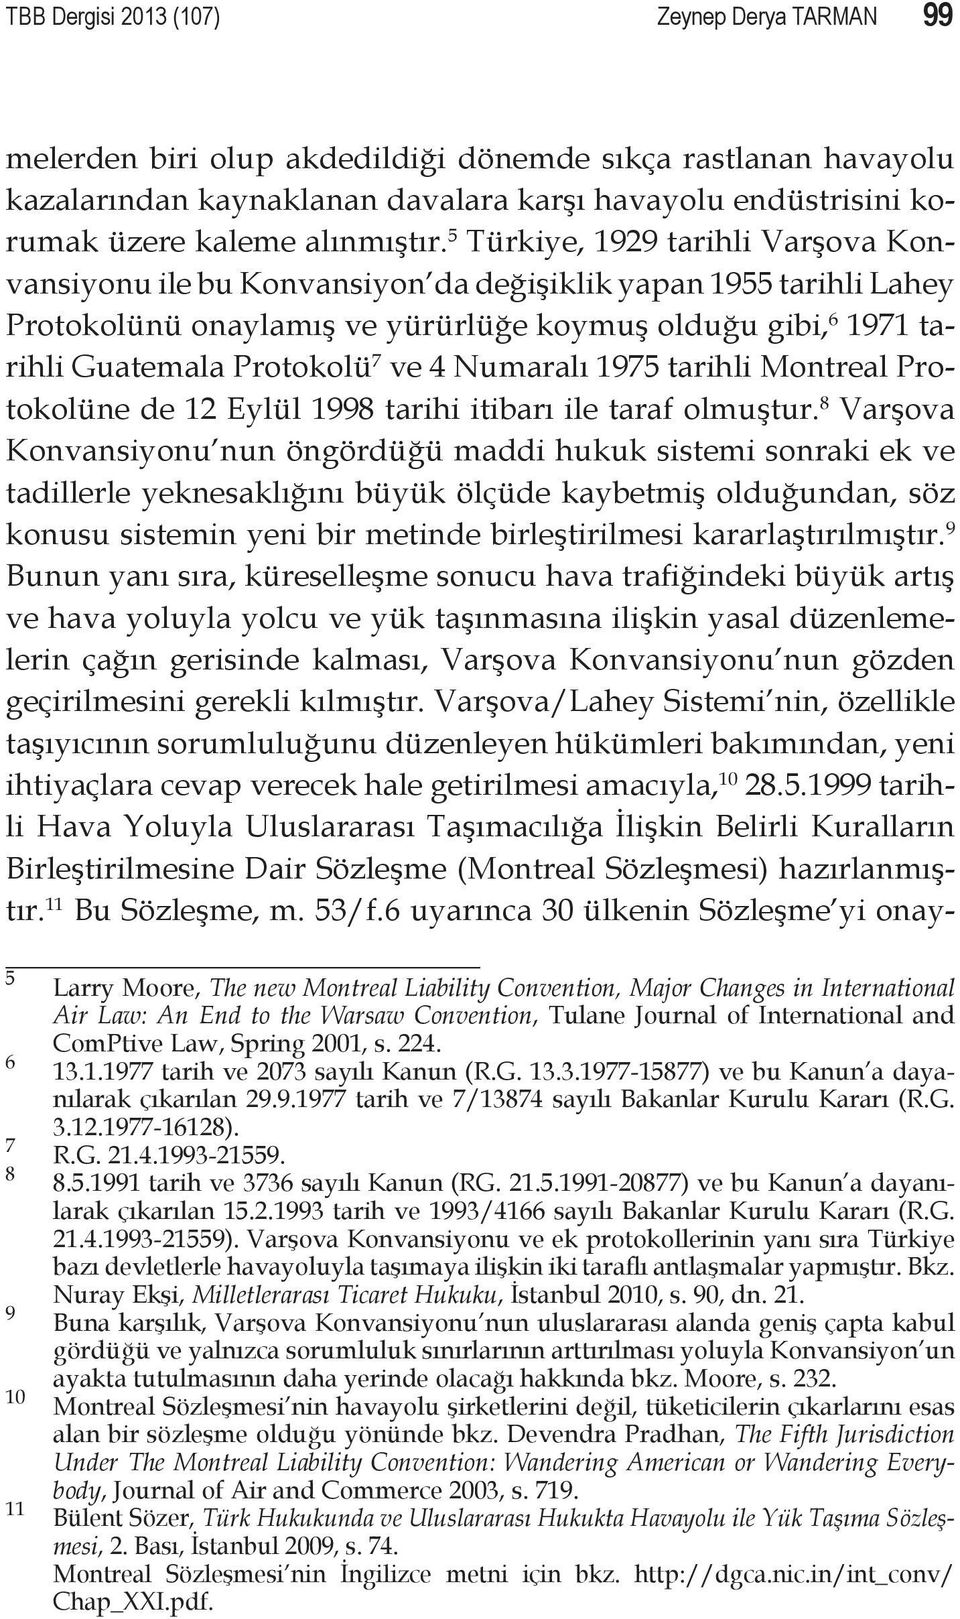 5 Türkiye, 1929 tarihli Varşova Konvansiyonu ile bu Konvansiyon da değişiklik yapan 1955 tarihli Lahey Protokolünü onaylamış ve yürürlüğe koymuş olduğu gibi, 6 1971 tarihli Guatemala Protokolü 7 ve 4